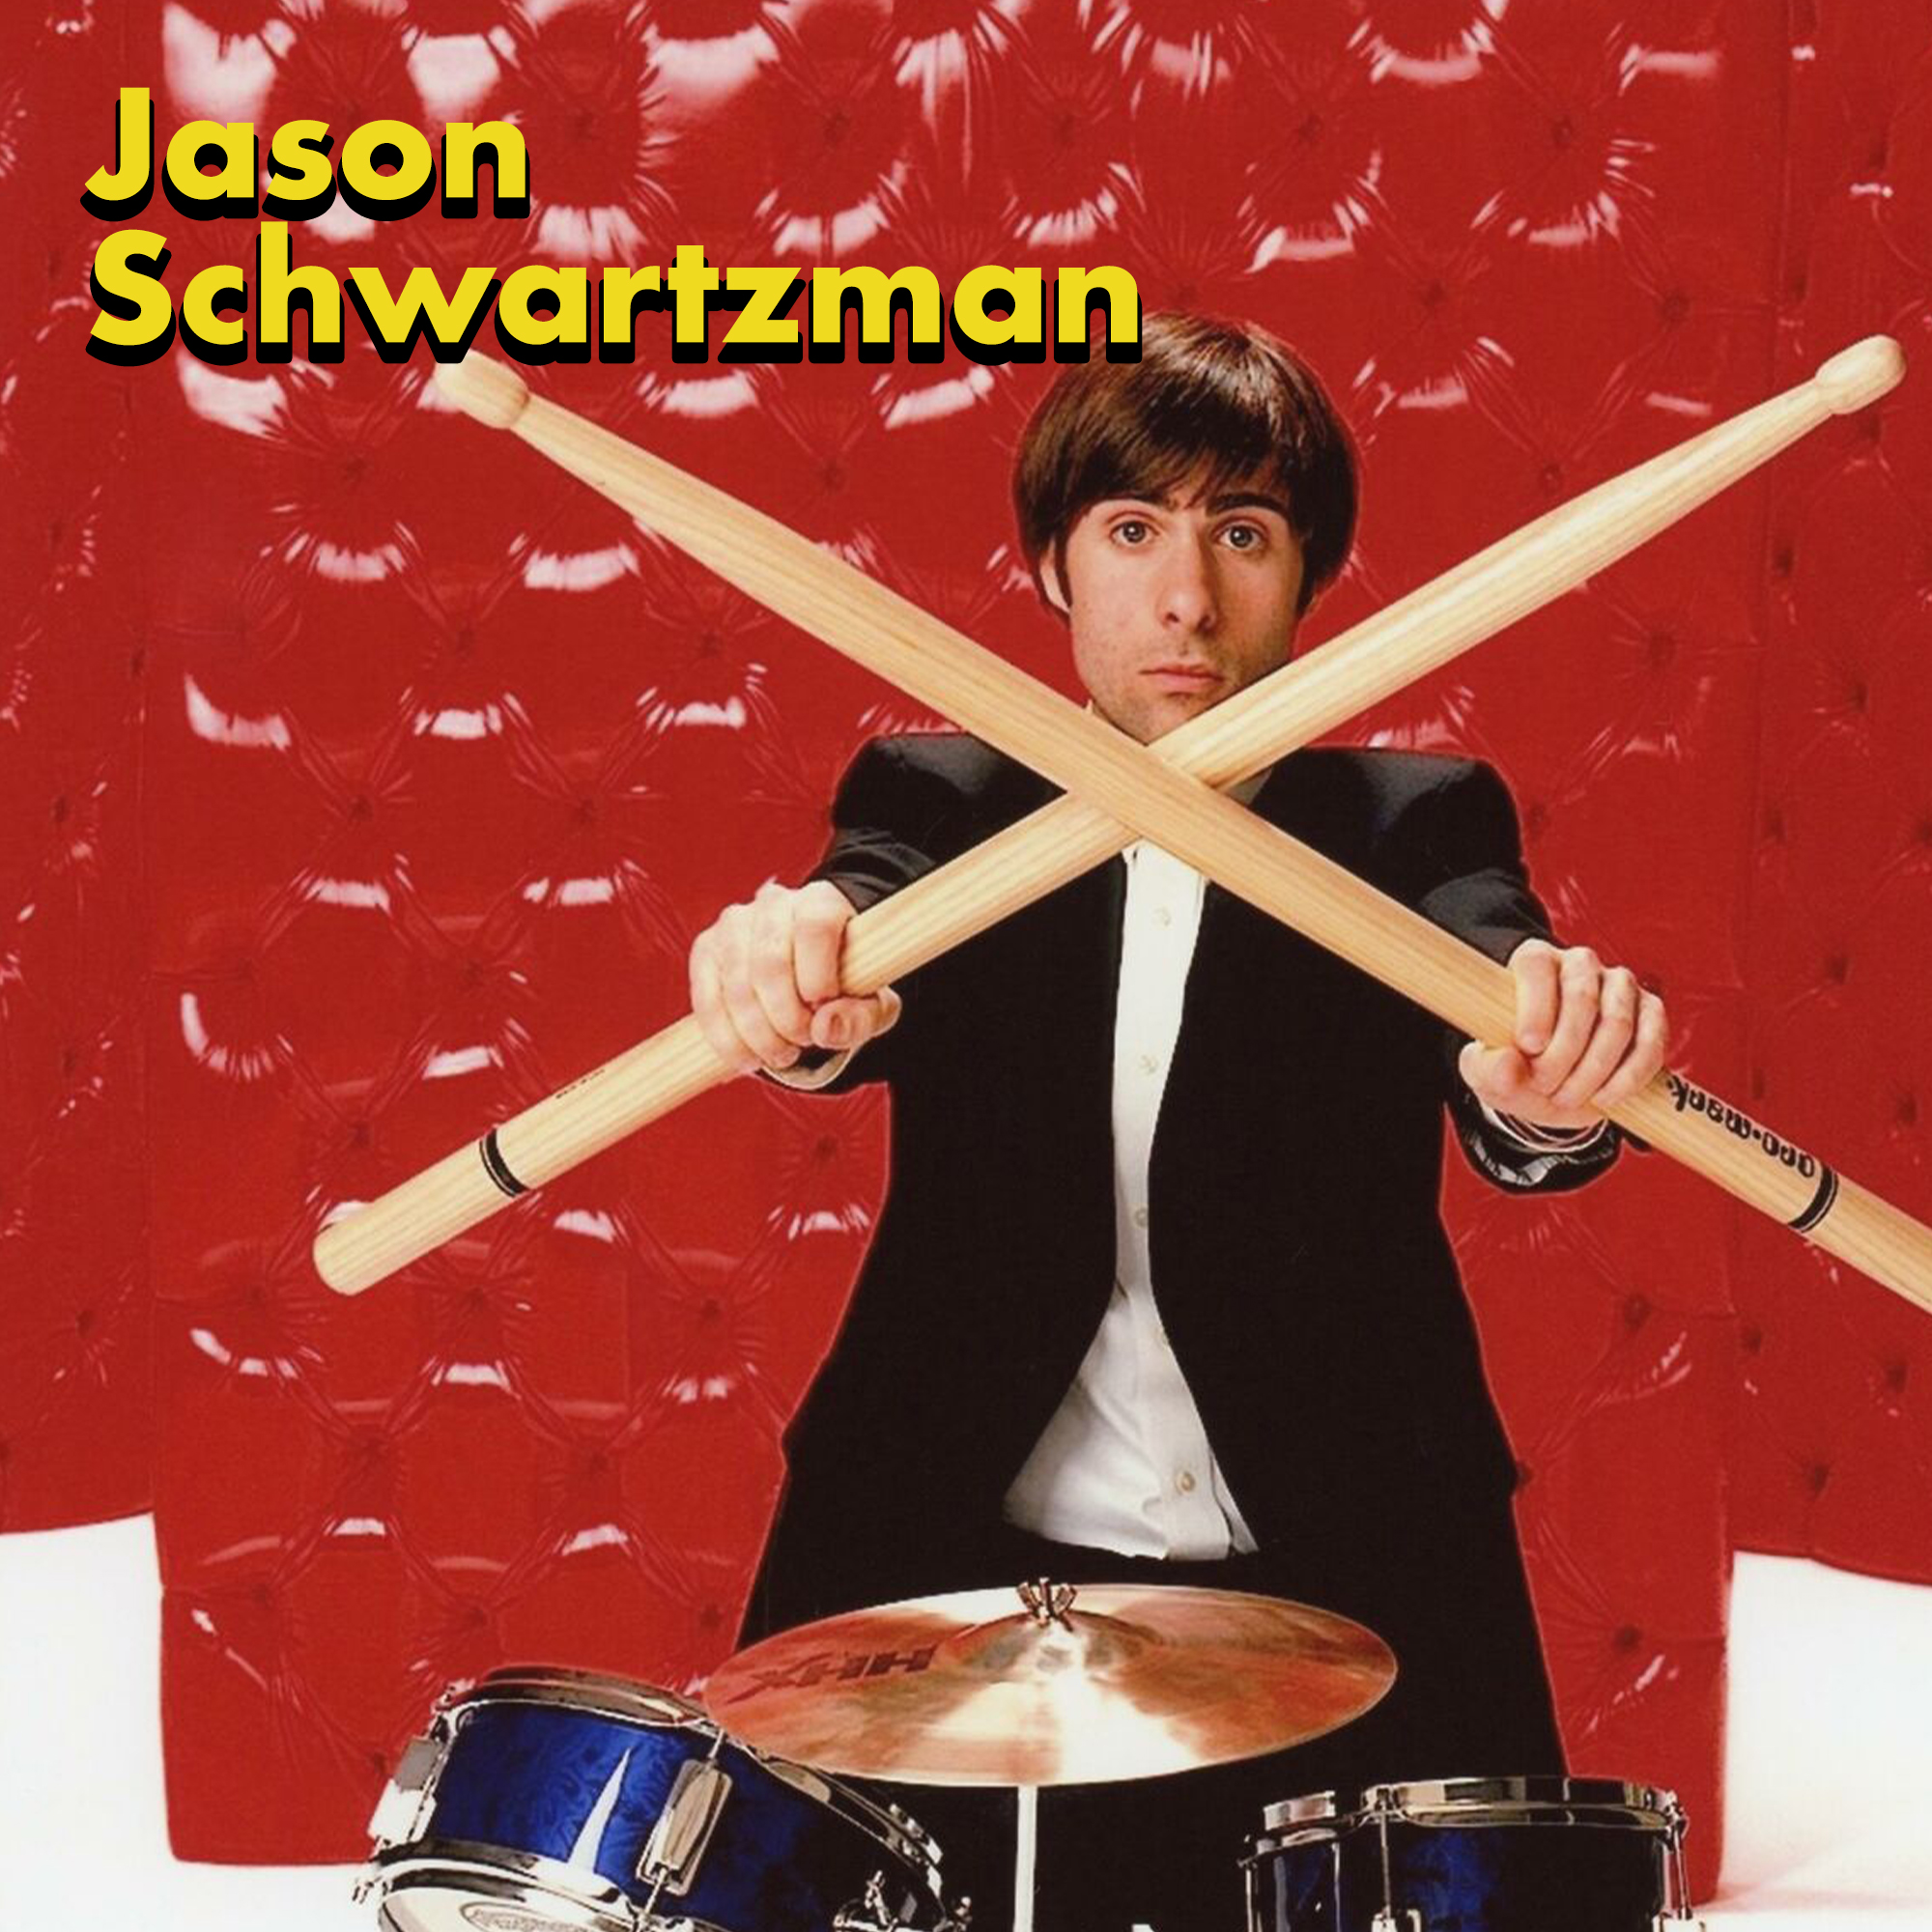 actors in bands - drums - Jason Schwartzman